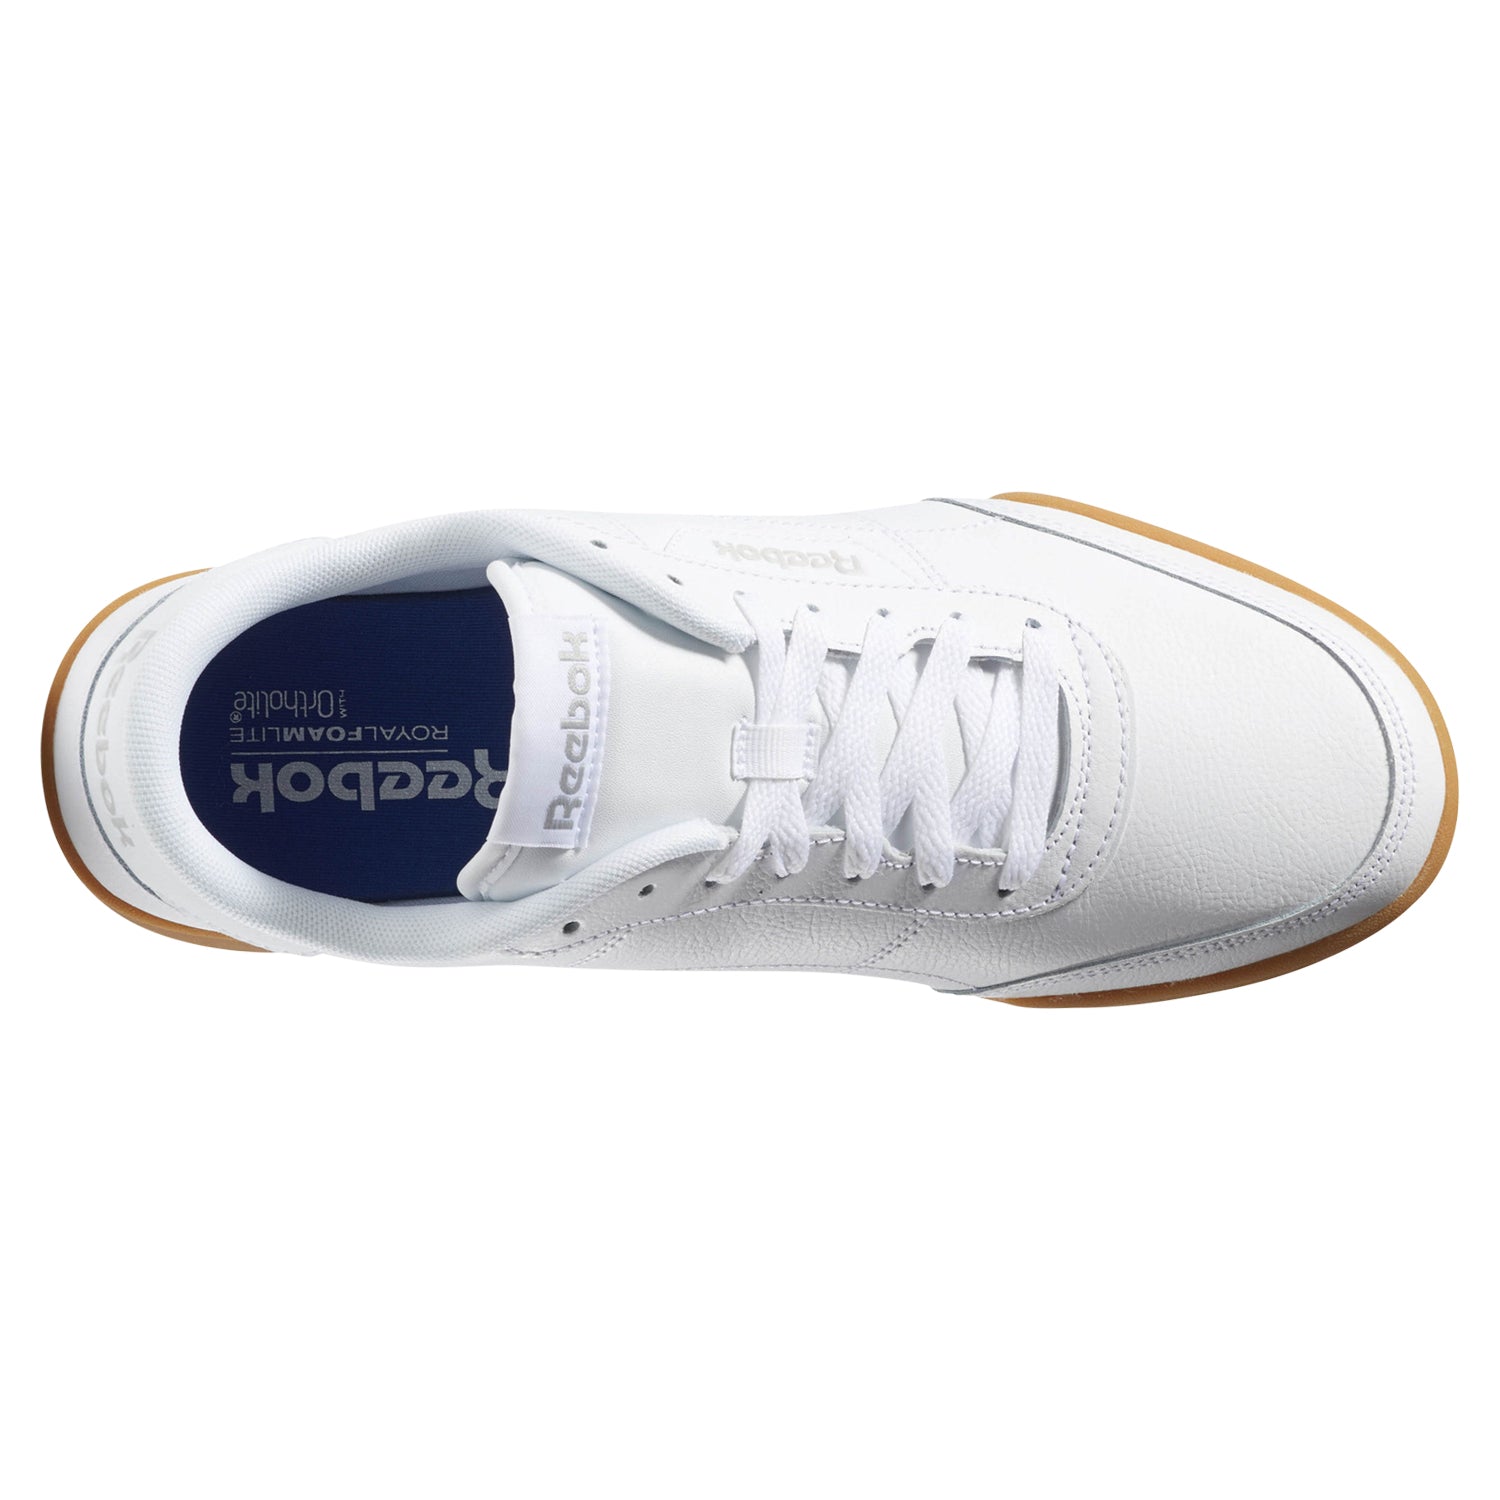 tradesports.co.uk Reebok Royal Heredis Men's Shoes - White